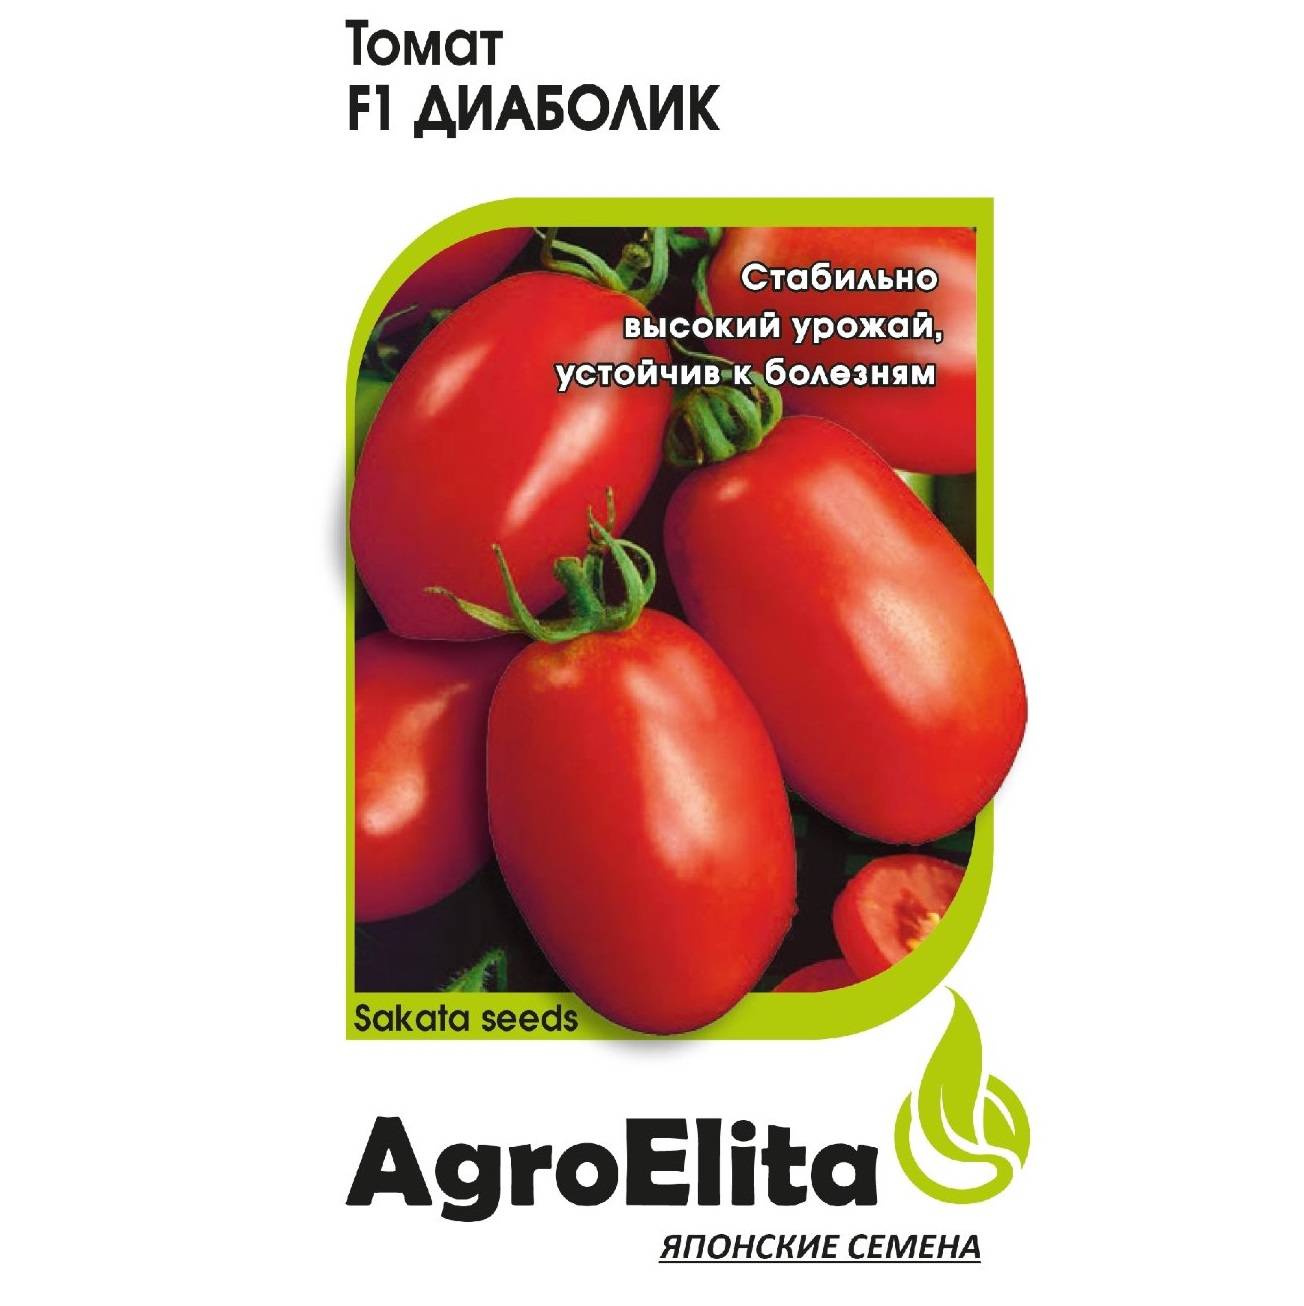 Диаболик — высокоурожайный и неприхотливый сорт томатов